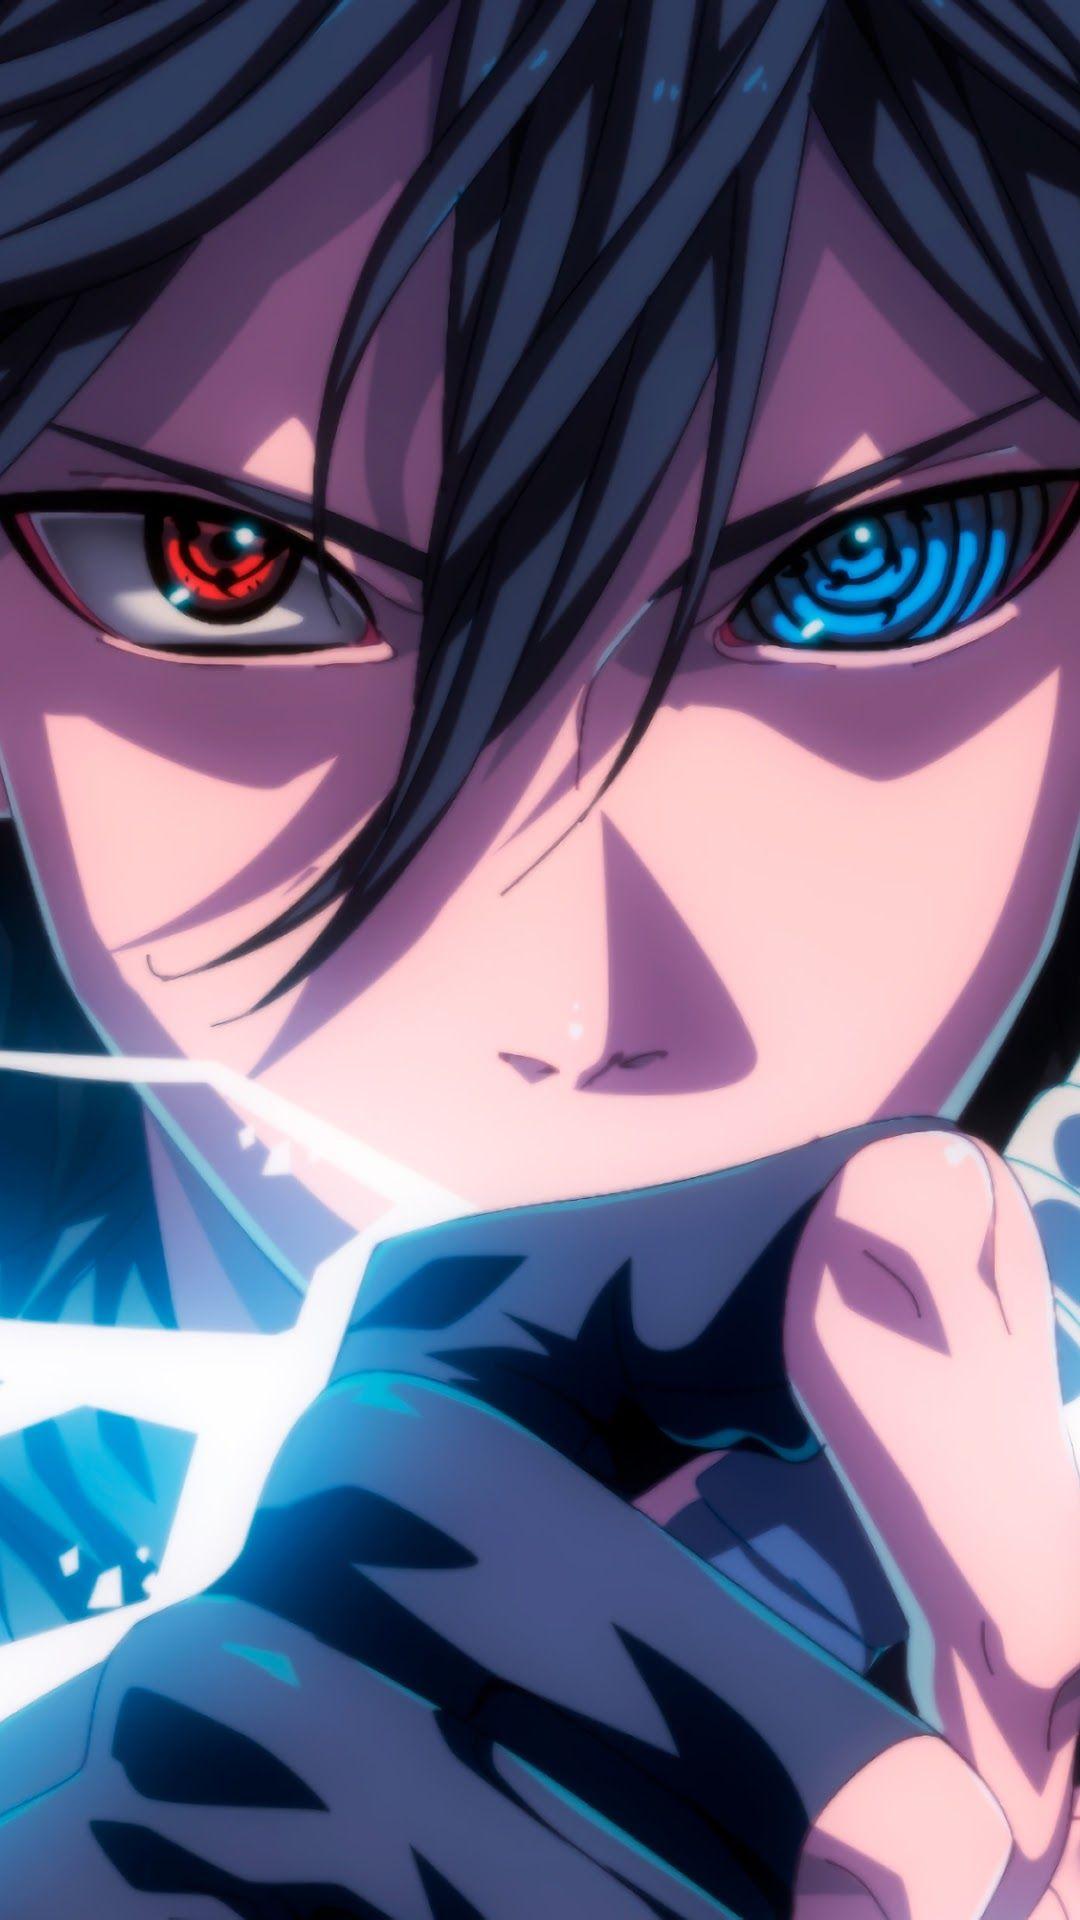 Ảnh Sasuke Sharingan mới nhất: Ảnh Sasuke Sharingan mới nhất sẽ đưa bạn trở lại với thế giới Naruto với sự kích thích và tò mò. Với sức mạnh bí ẩn đến từ cặp mắt demon này, chắc chắn sẽ mang đến cho các fan hâm mộ một trải nghiệm mới lạ và hấp dẫn. Hãy xem ngay ảnh Sasuke Sharingan mới nhất để cập nhật được nhiều hơn về cặp mắt đầy sức mạnh này.